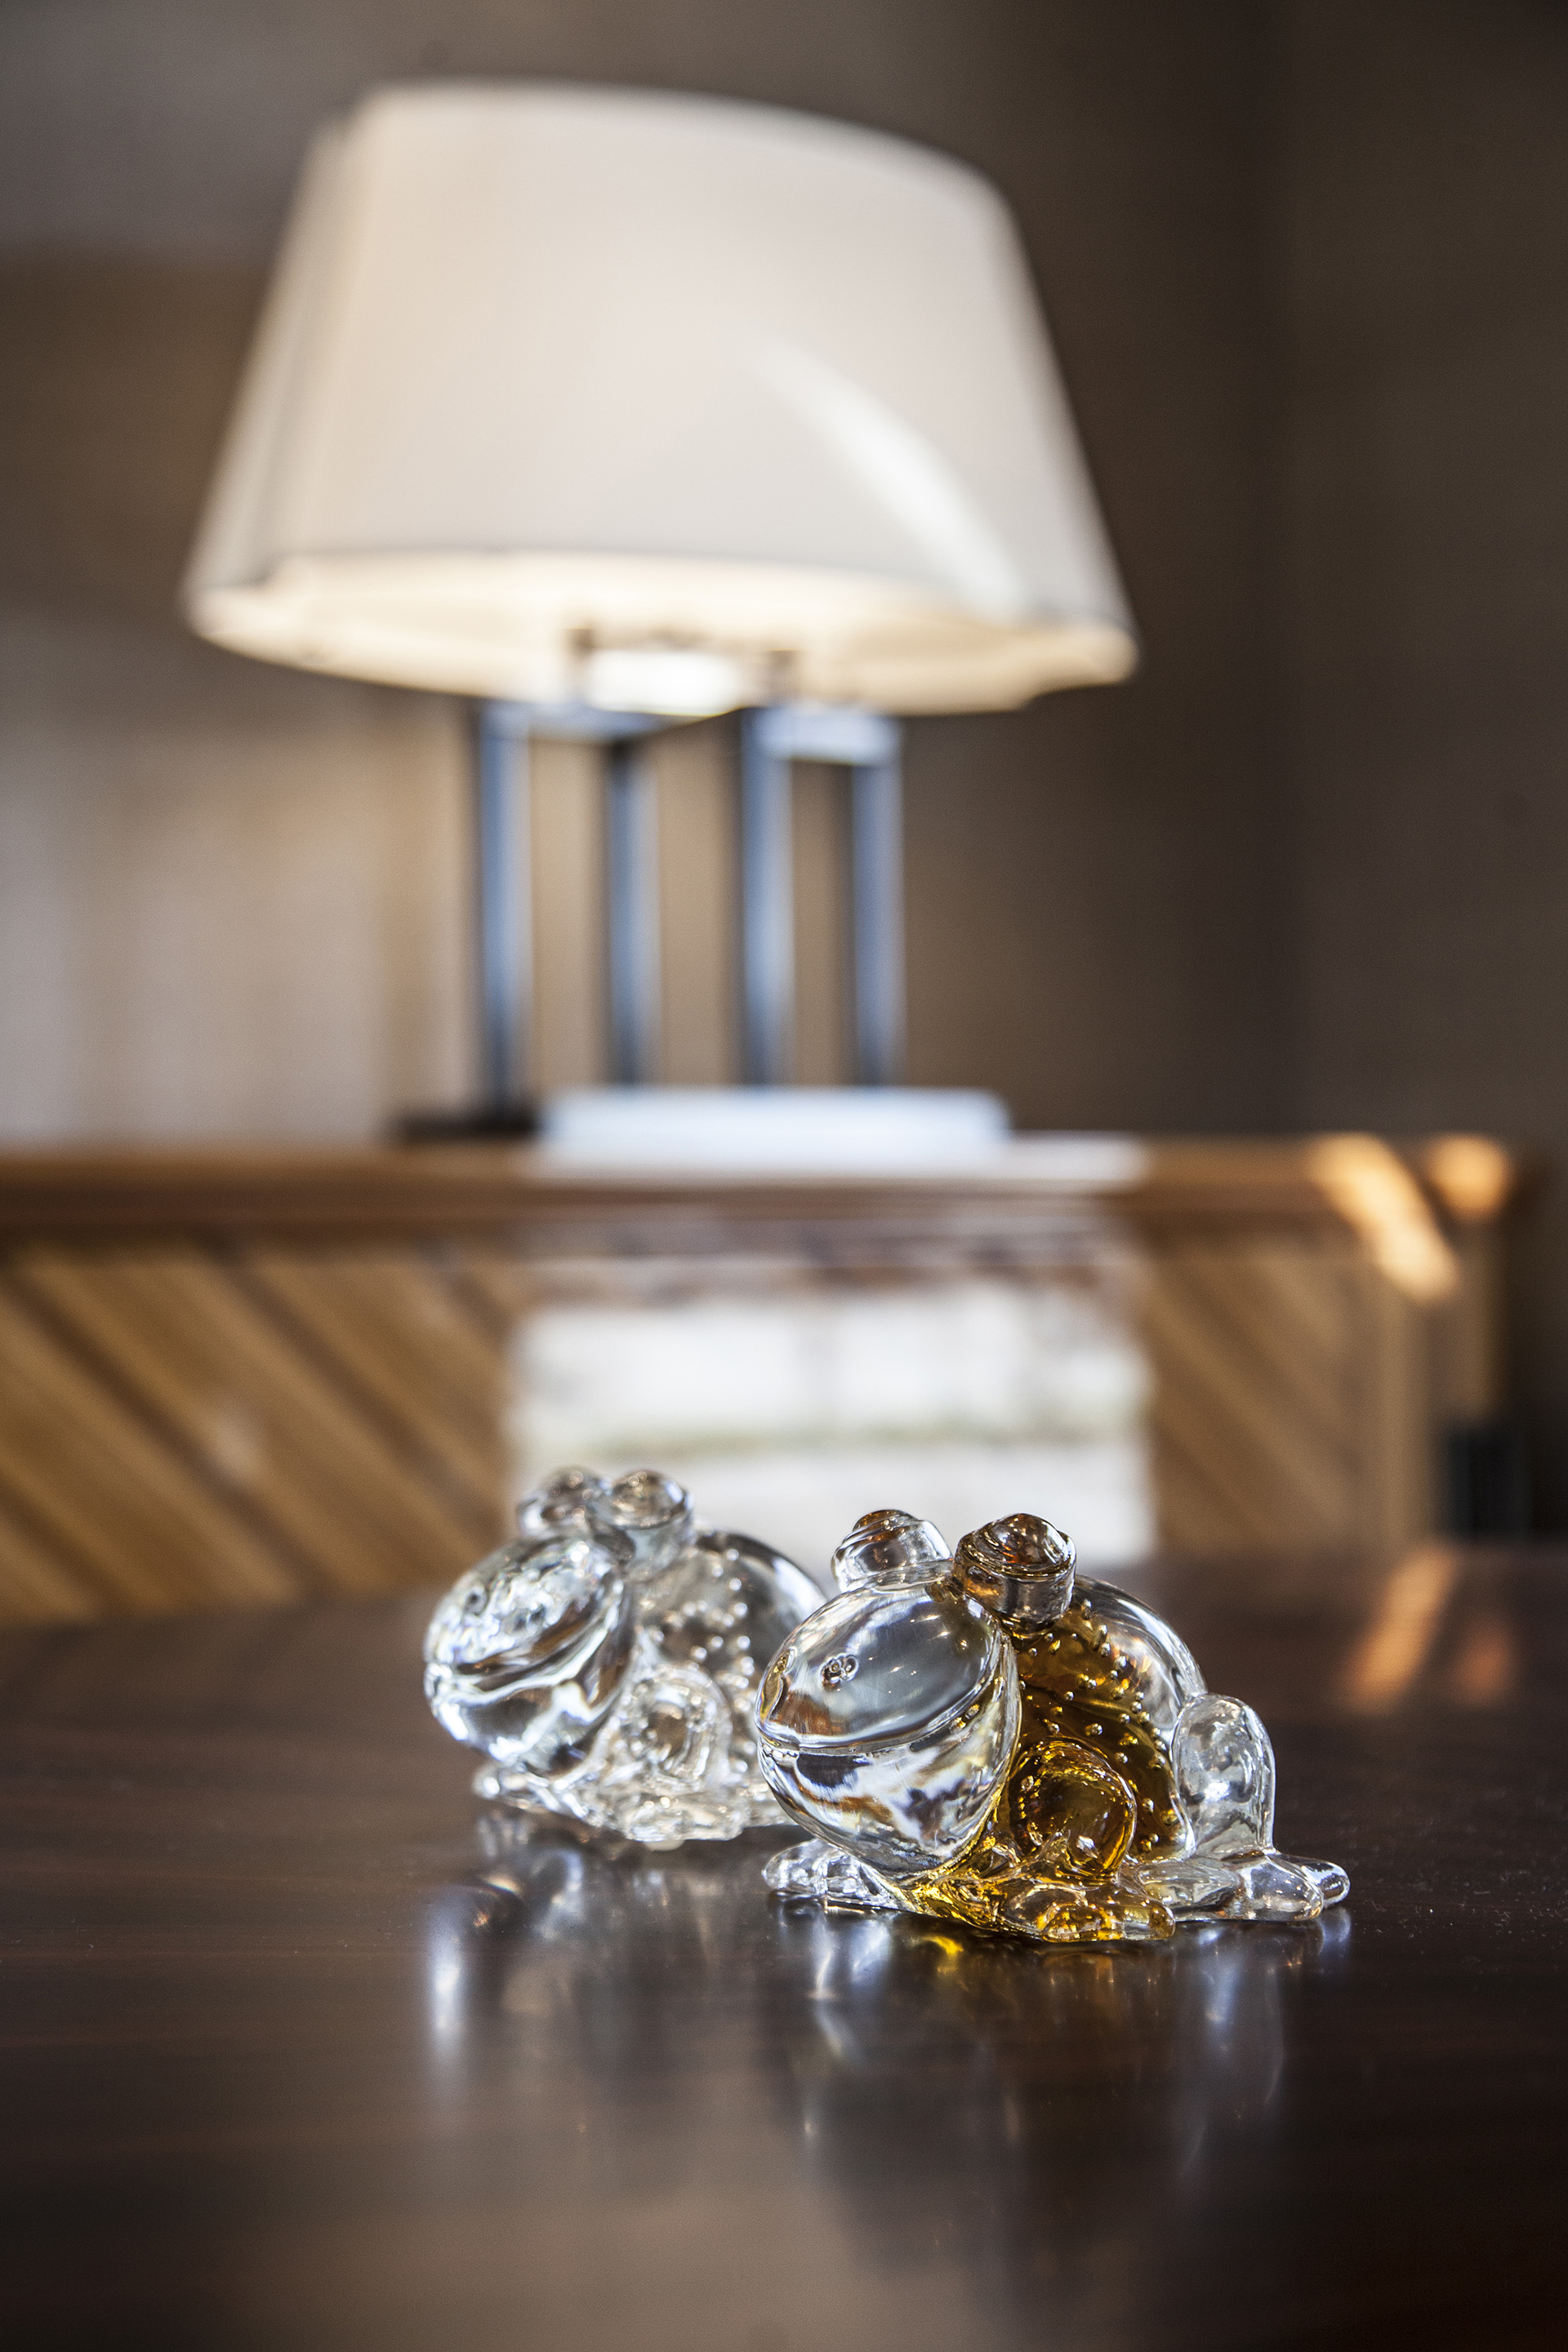 Rana in Vetro di Murano è una rana in vetro, mascotte di Promemoria, disponibile in diversi colori, del catalogo di Promemoria | Promemoria